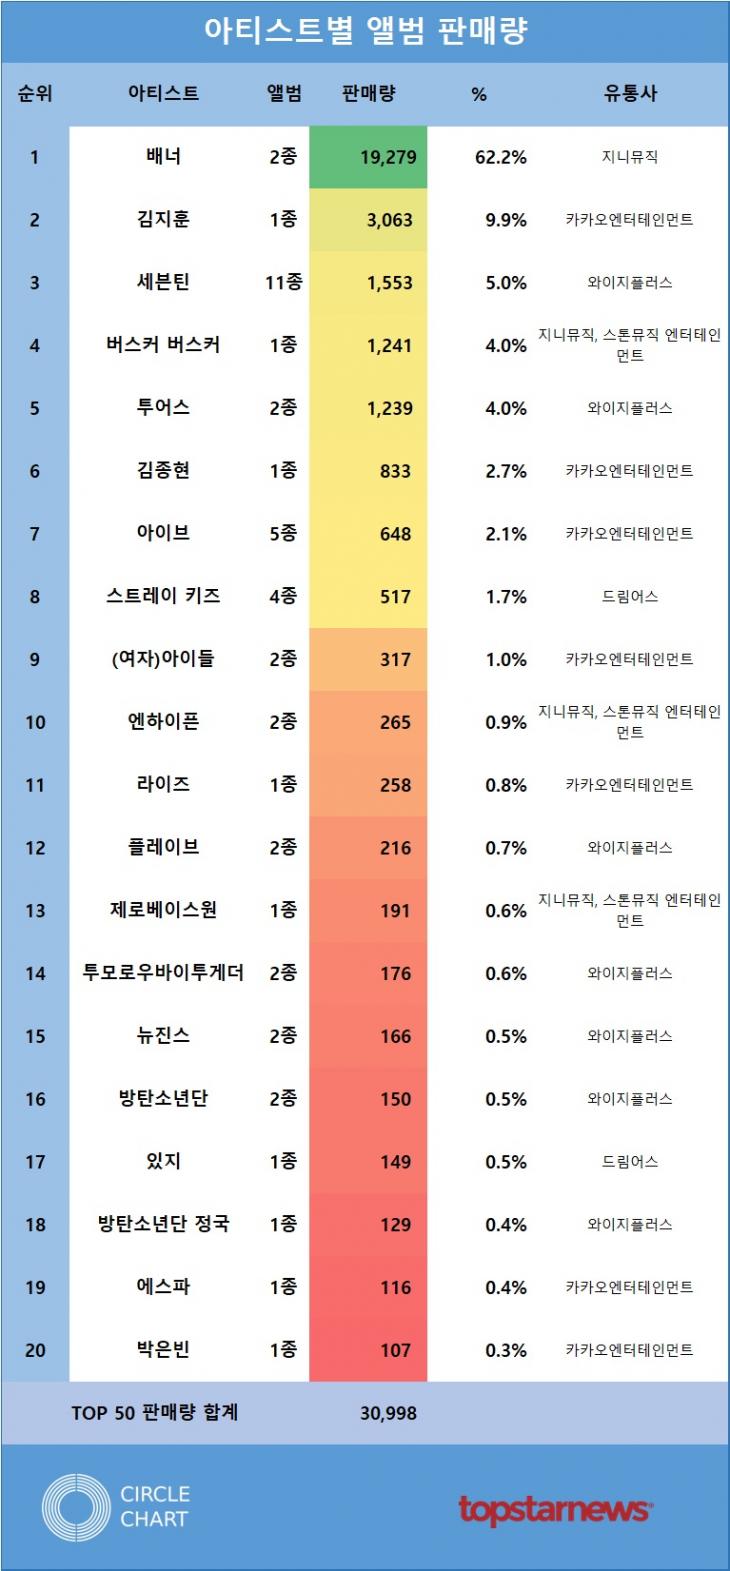 [표2] 아티스트별 앨범 판매량 TOP20